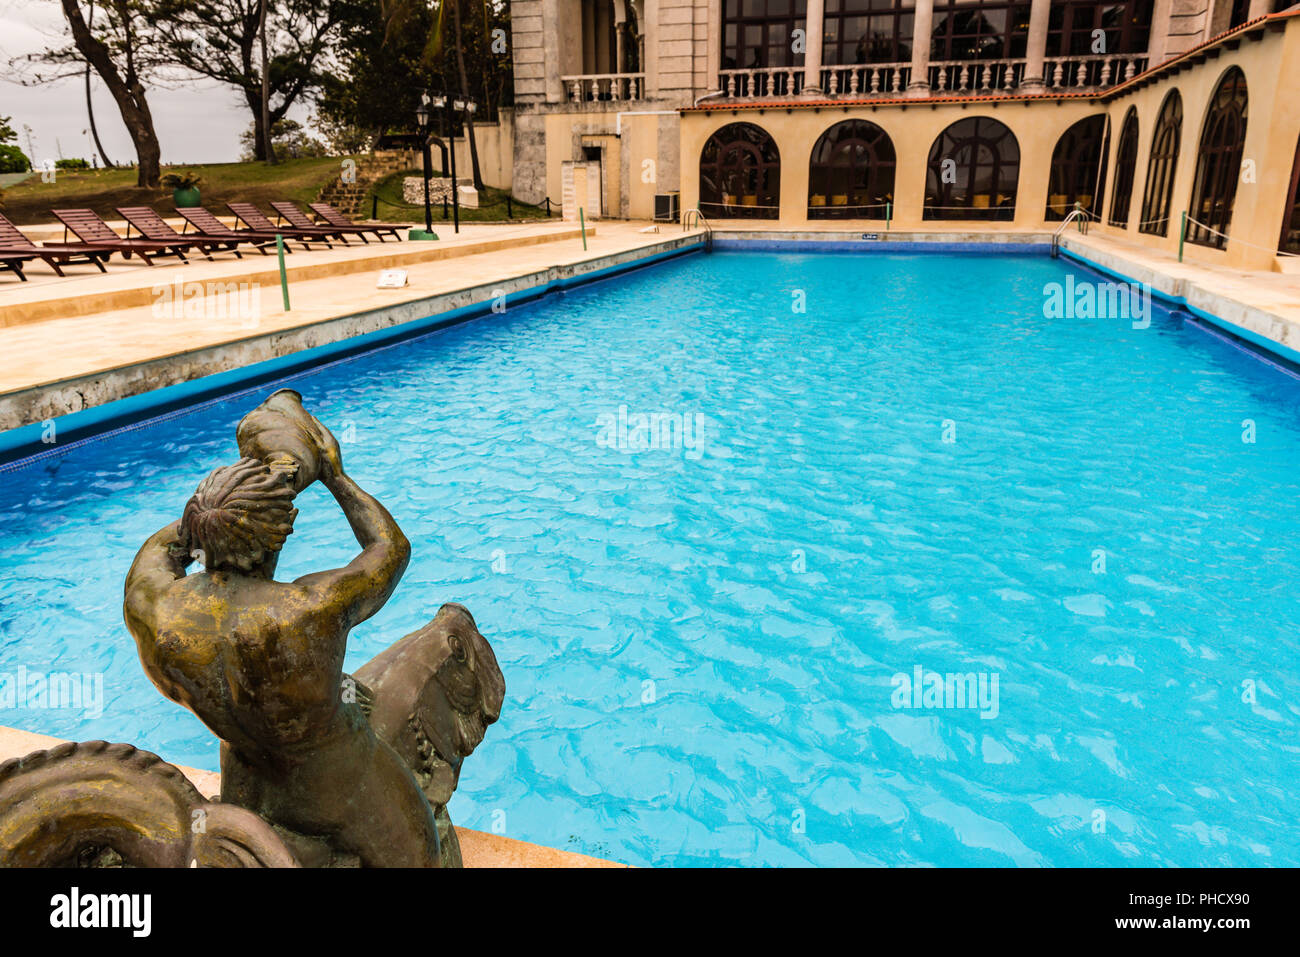 La Havane, Cuba, 21 mars 2016 / : piscine d'hôtel historique Nacional avec détails art déco datant de 1930 Banque D'Images